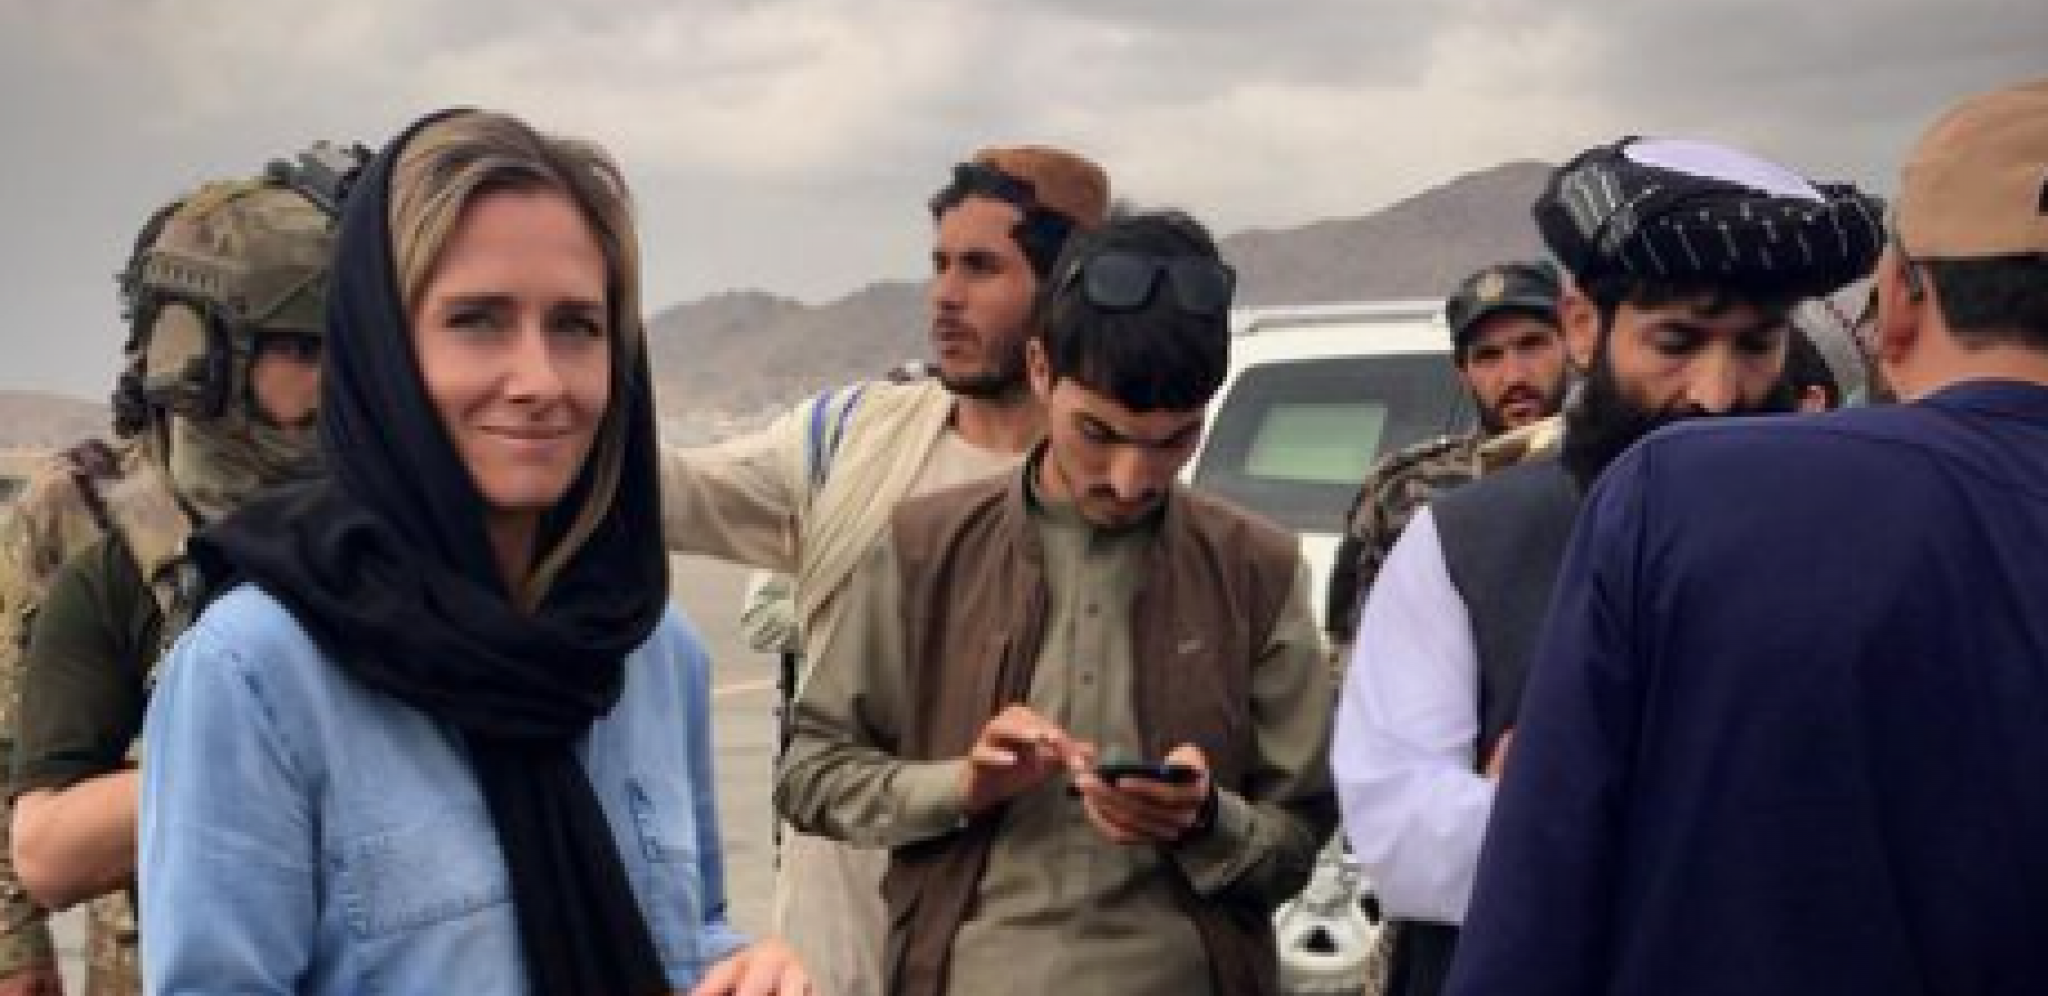 NOVINARKA SA NOVOG ZELANDA OSTALA TRUDNA U AVGANISTANU Talibani joj ponudili pomoć, njena država odbila da joj pomogne